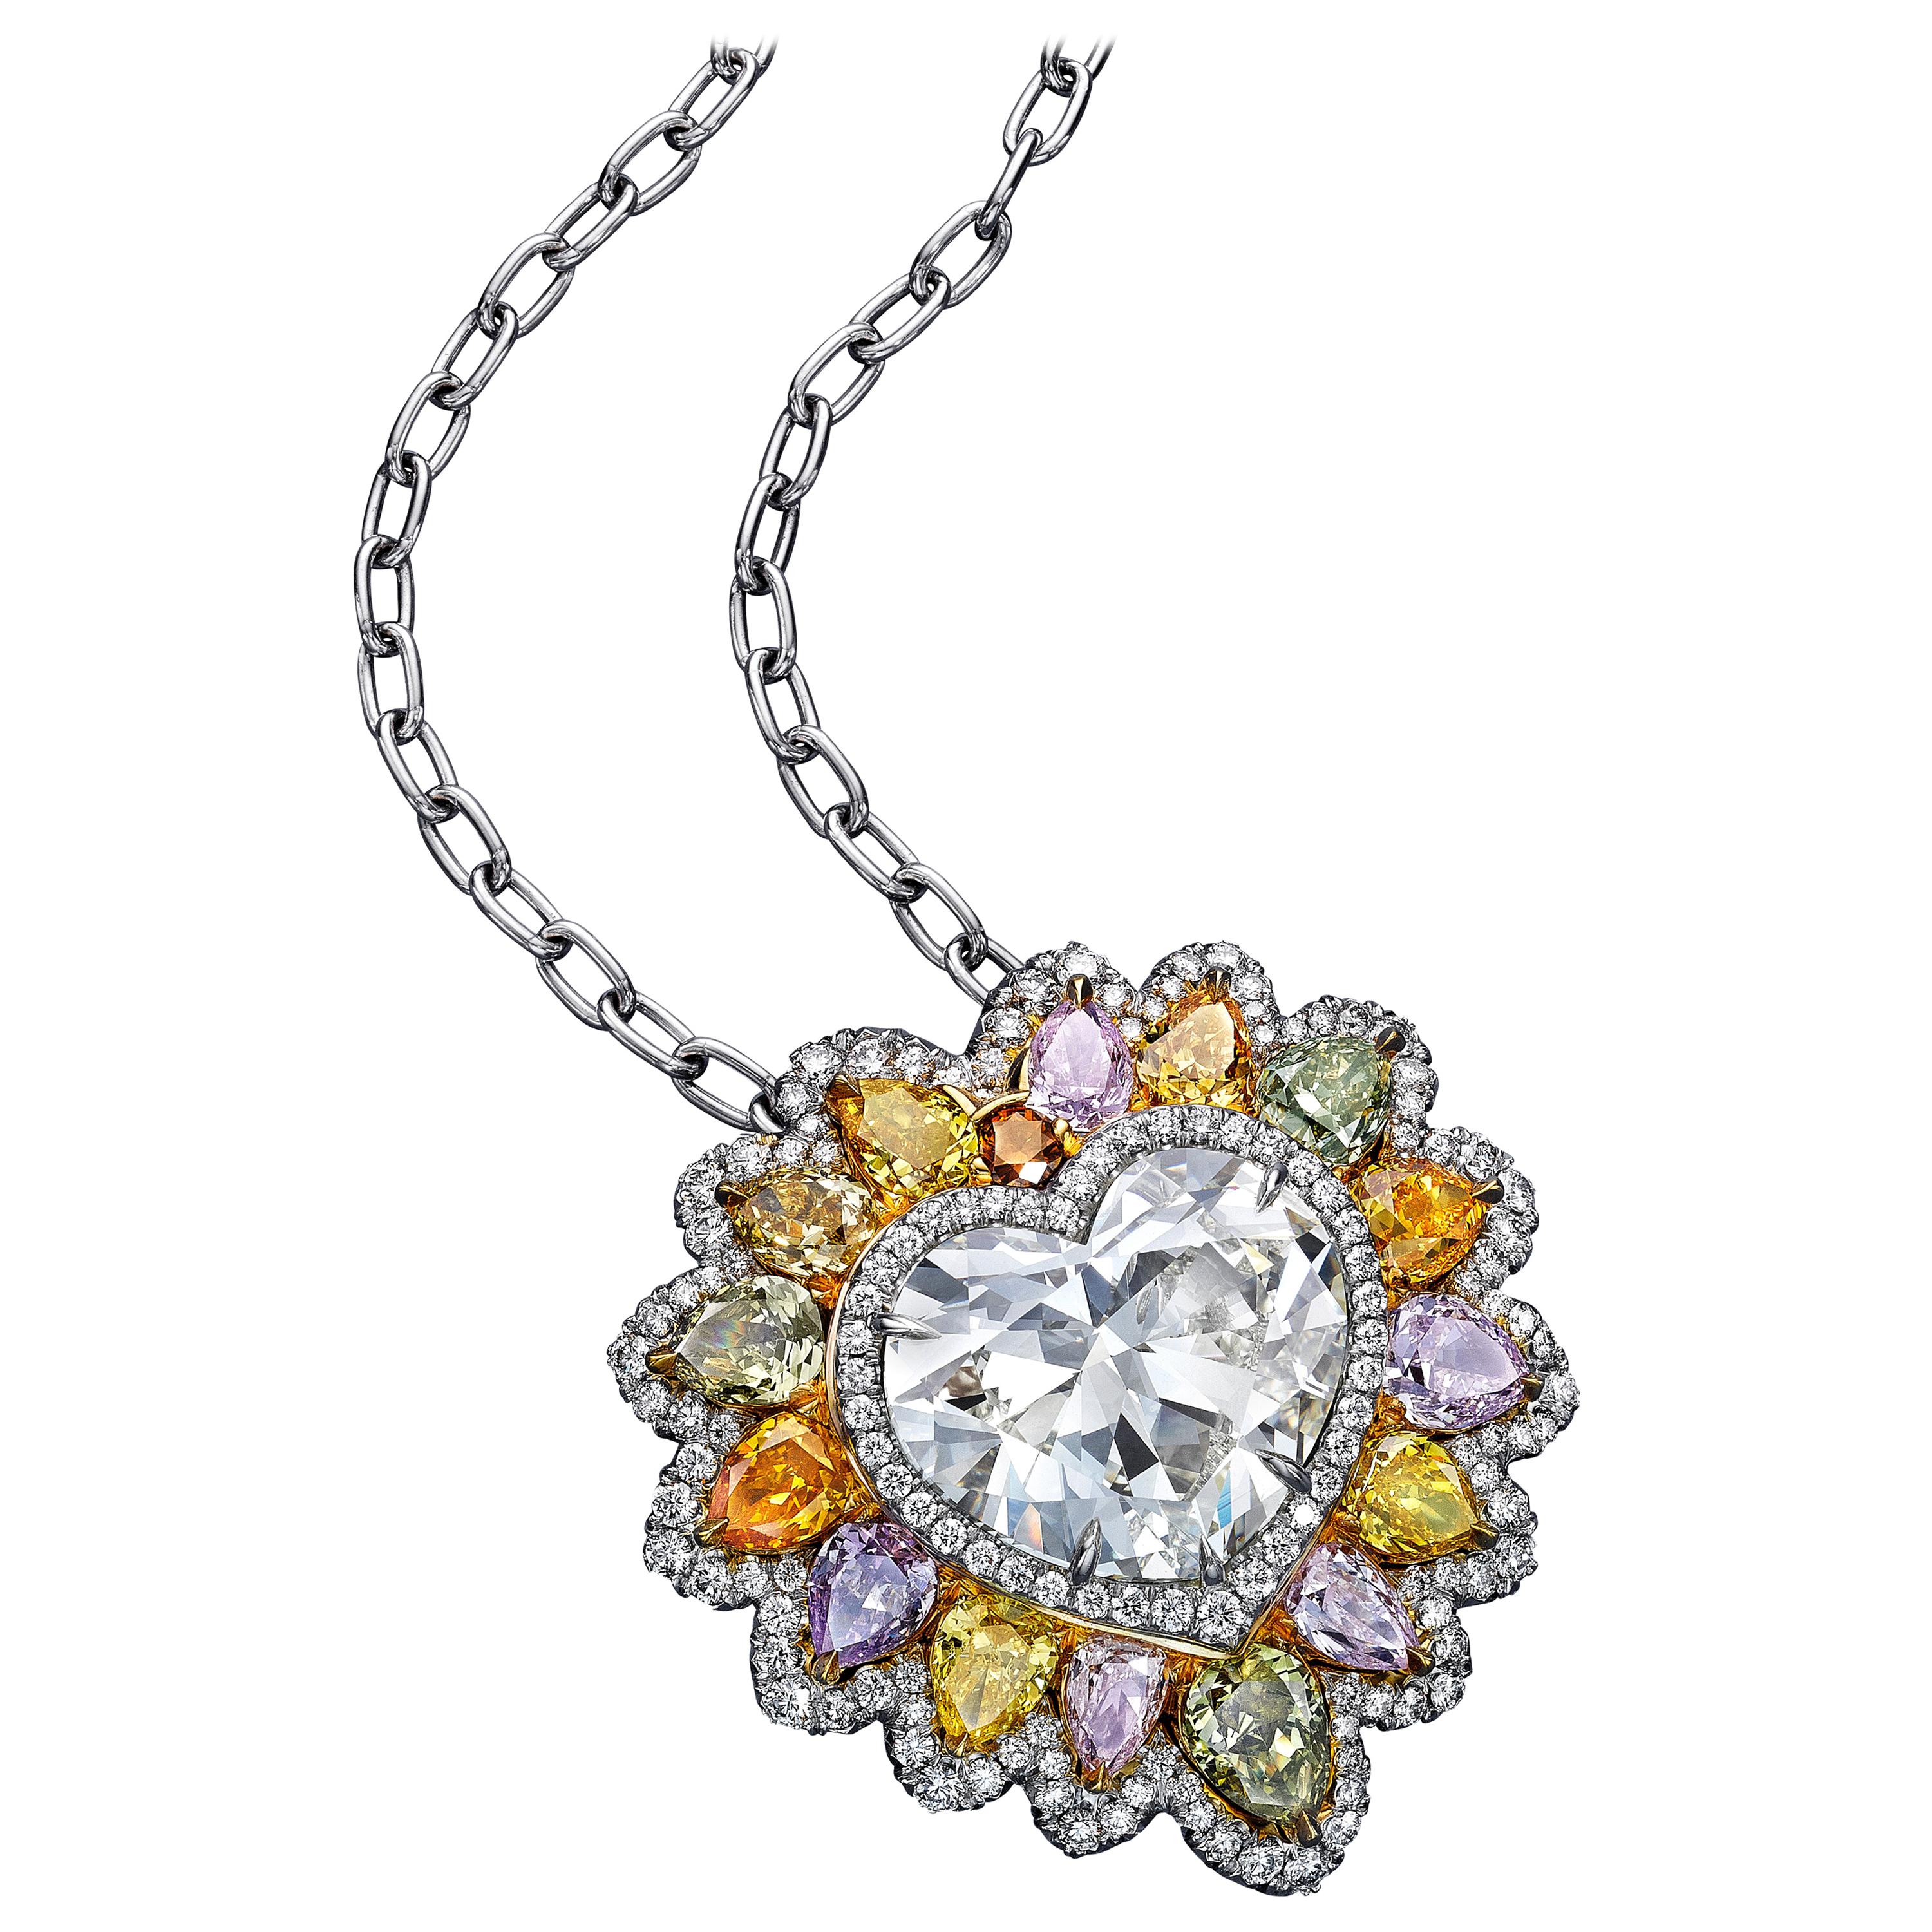 Halskette mit GIA-zertifiziertem 10,02 Karat herzförmigem Diamant-Löwen-Halo-Anhänger